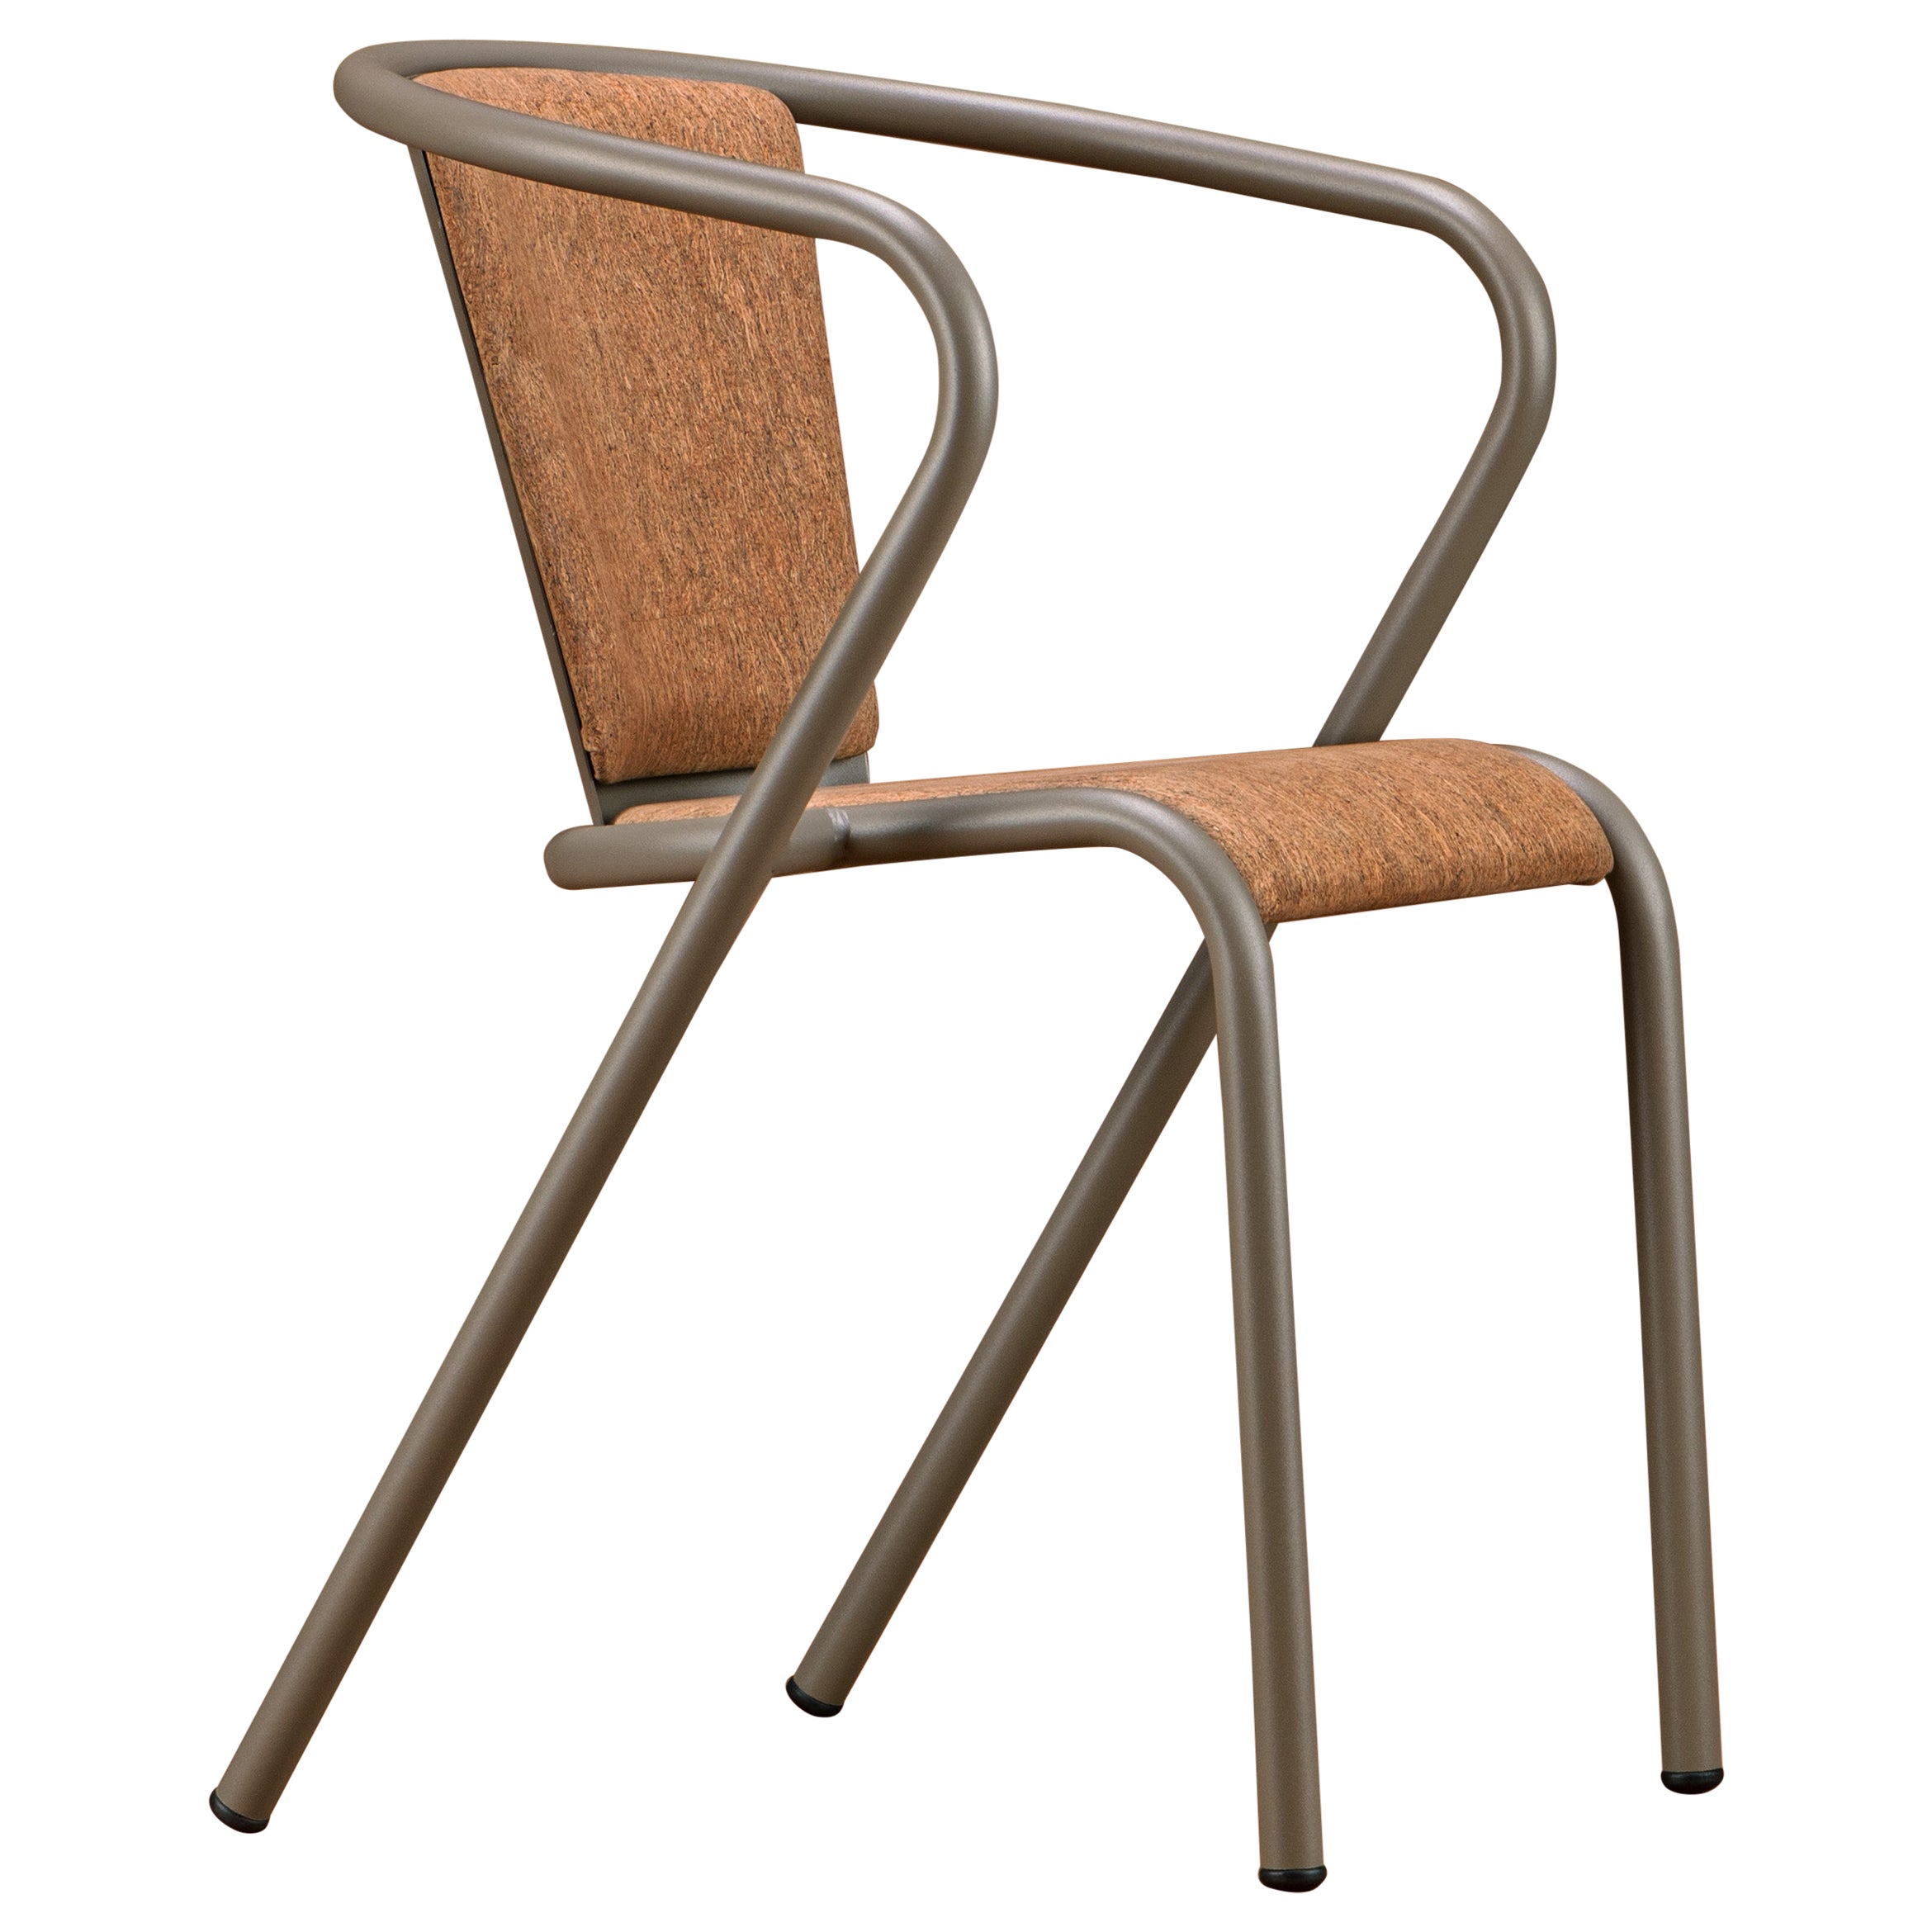 BICA-Sessel Moderner Stahlsessel aus oxidiertem Bark, Polsterung aus natürlichem Kork